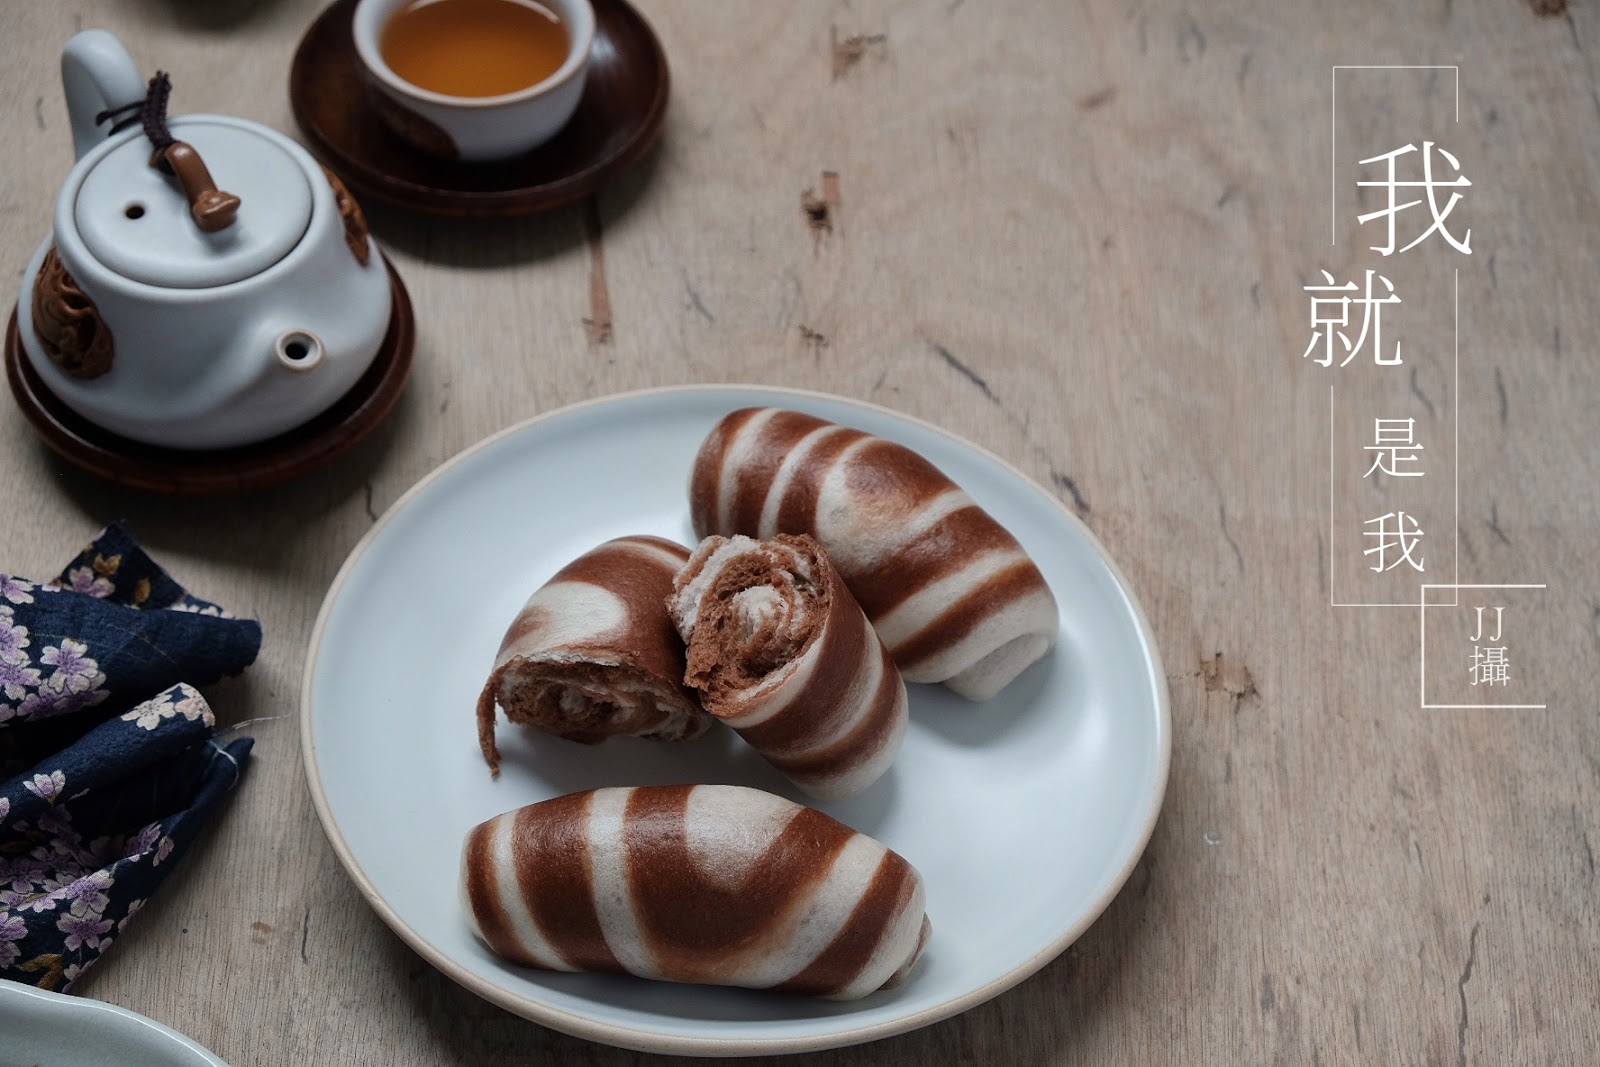 爱厨房的幸福之味: 可可双色馒头卷（天珠纹馒头） Cocoa Steamed Buns